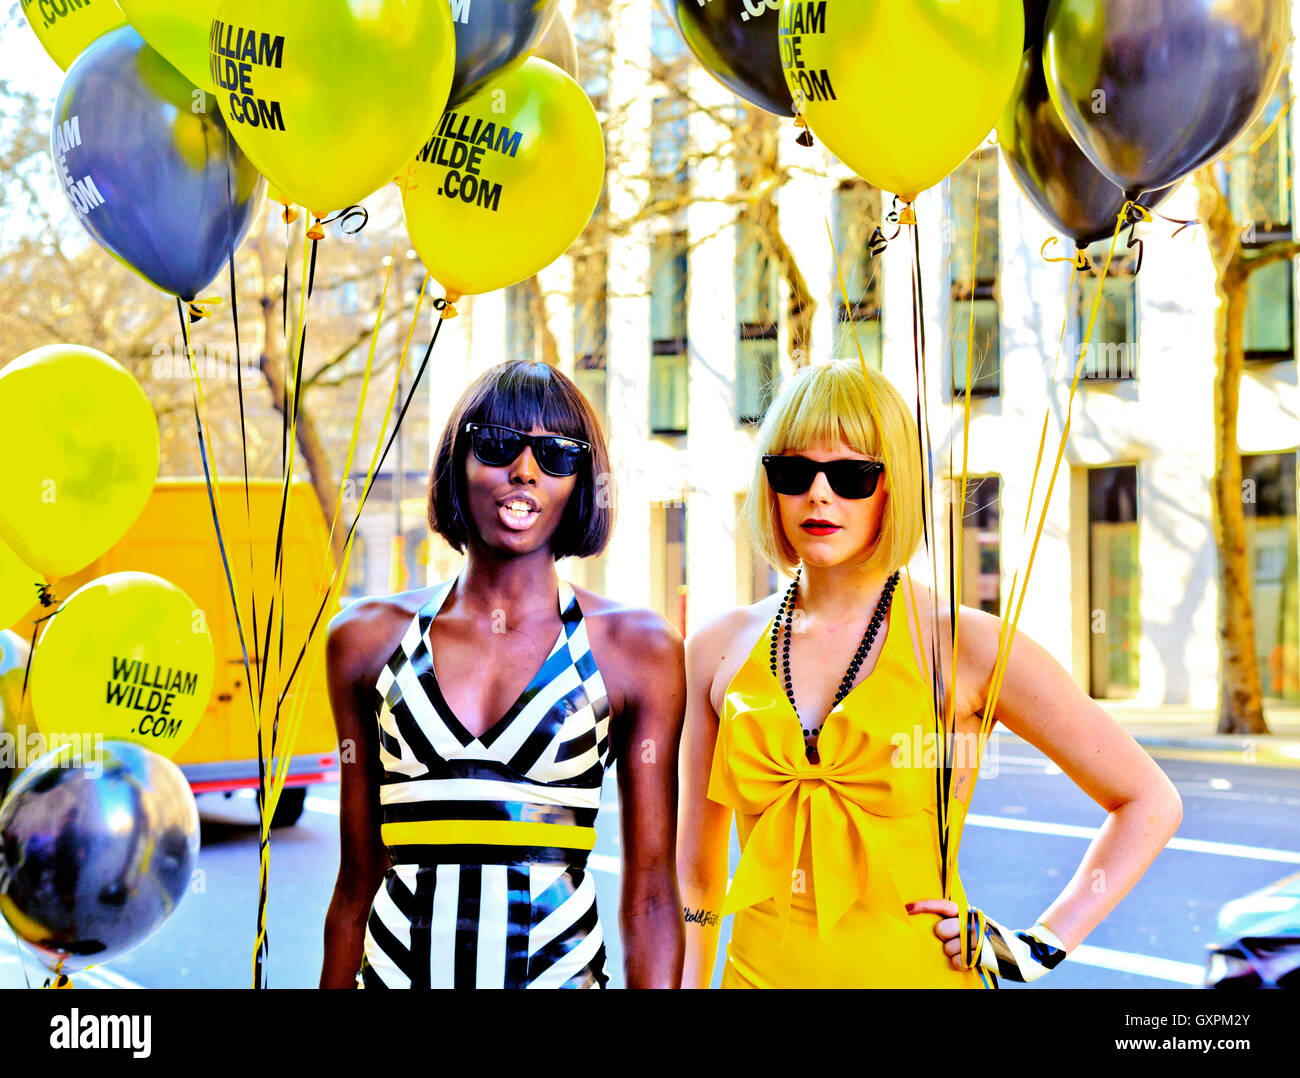 London Fashion Week 10 févr. 2013 des modèles de mode attrayant avec des ballons promouvoir William Wilde fait main exquise robes de latex Banque D'Images